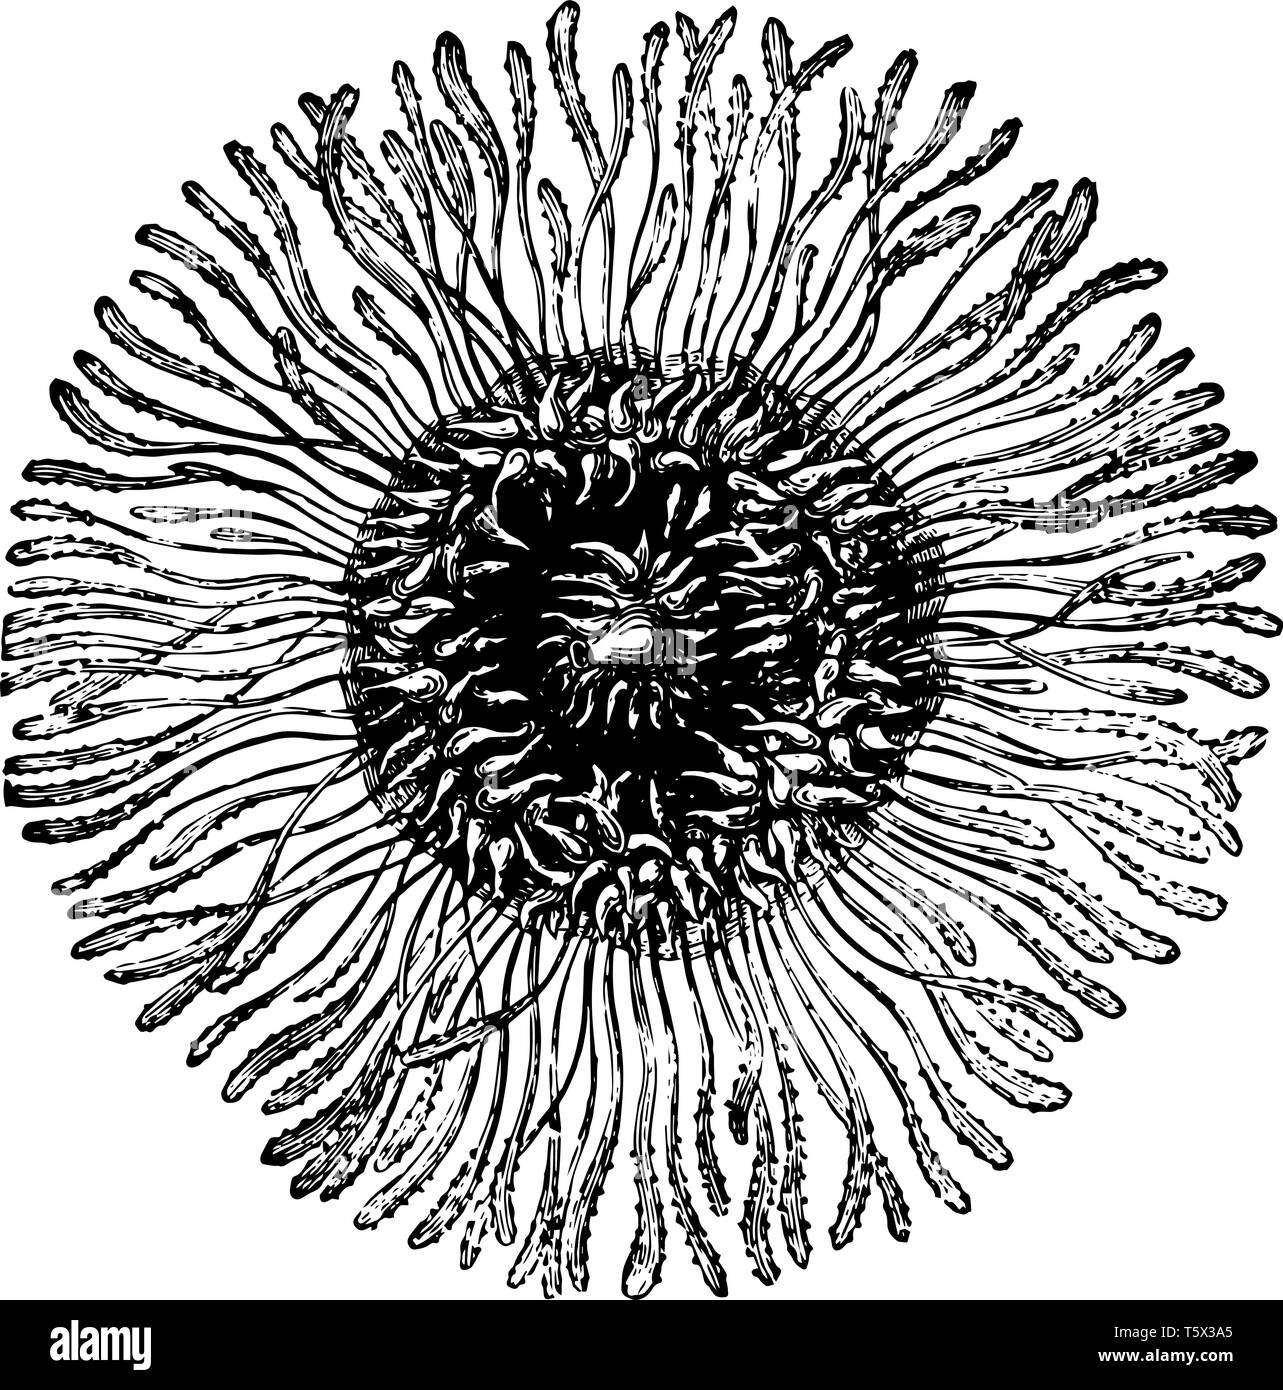 Porpita Pacifica è costituito da colonie di animali galleggianti arredate con un vintage cartilaginei disegno della linea di incisione o illustrazione. Illustrazione Vettoriale